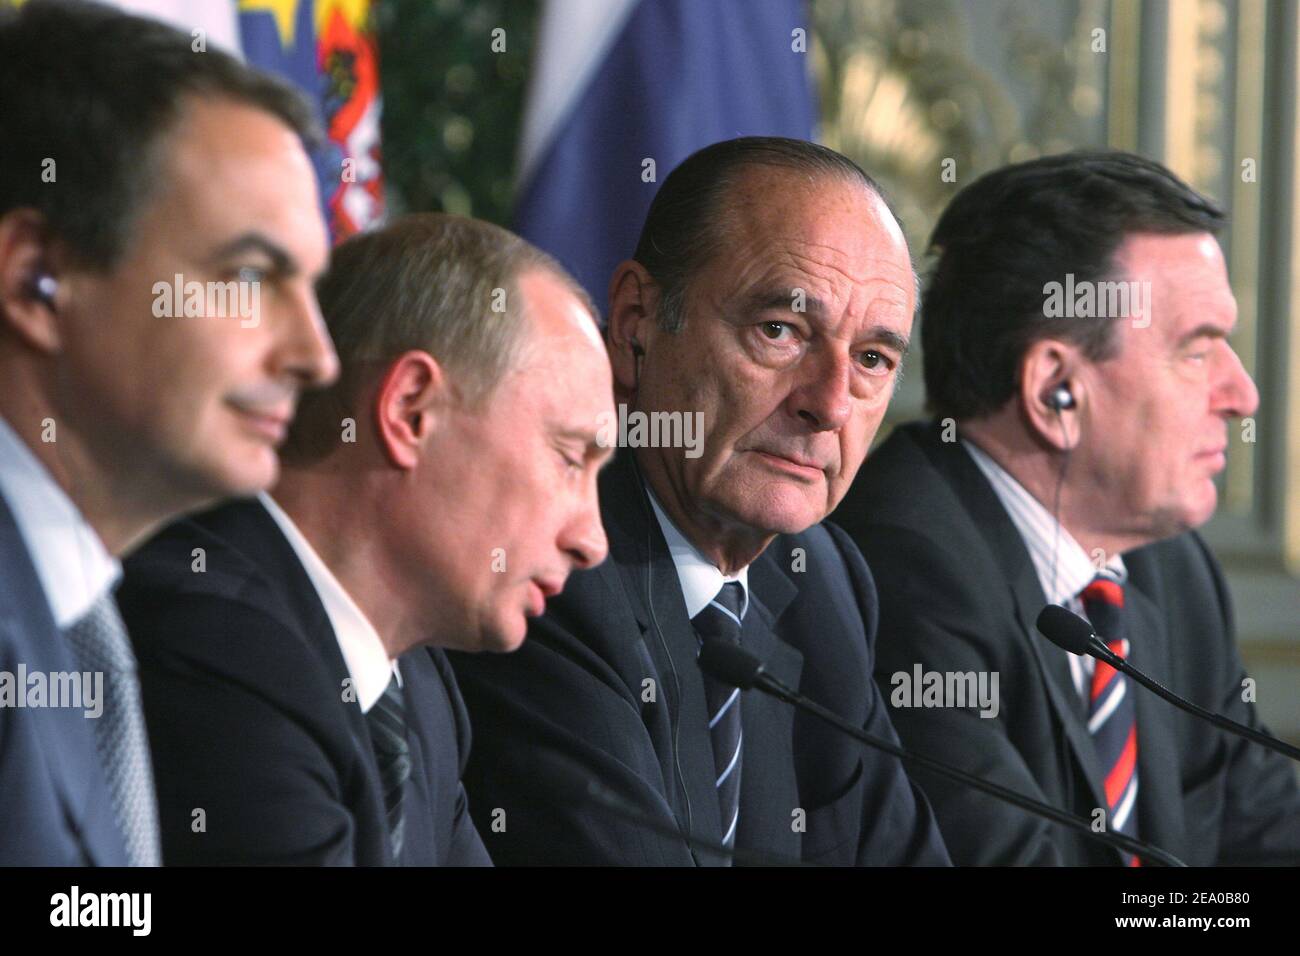 Jose Luis Zapatero, Vladimir Putin, Gerhard Schröder und Jacques Chirac bei der gemeinsamen Pressekonferenz während des ersten vier-Wege-Gipfels im Elysee-Palast in Paris, Frankreich, am 18. März 2005. Foto von Mousse/ABACA Stockfoto